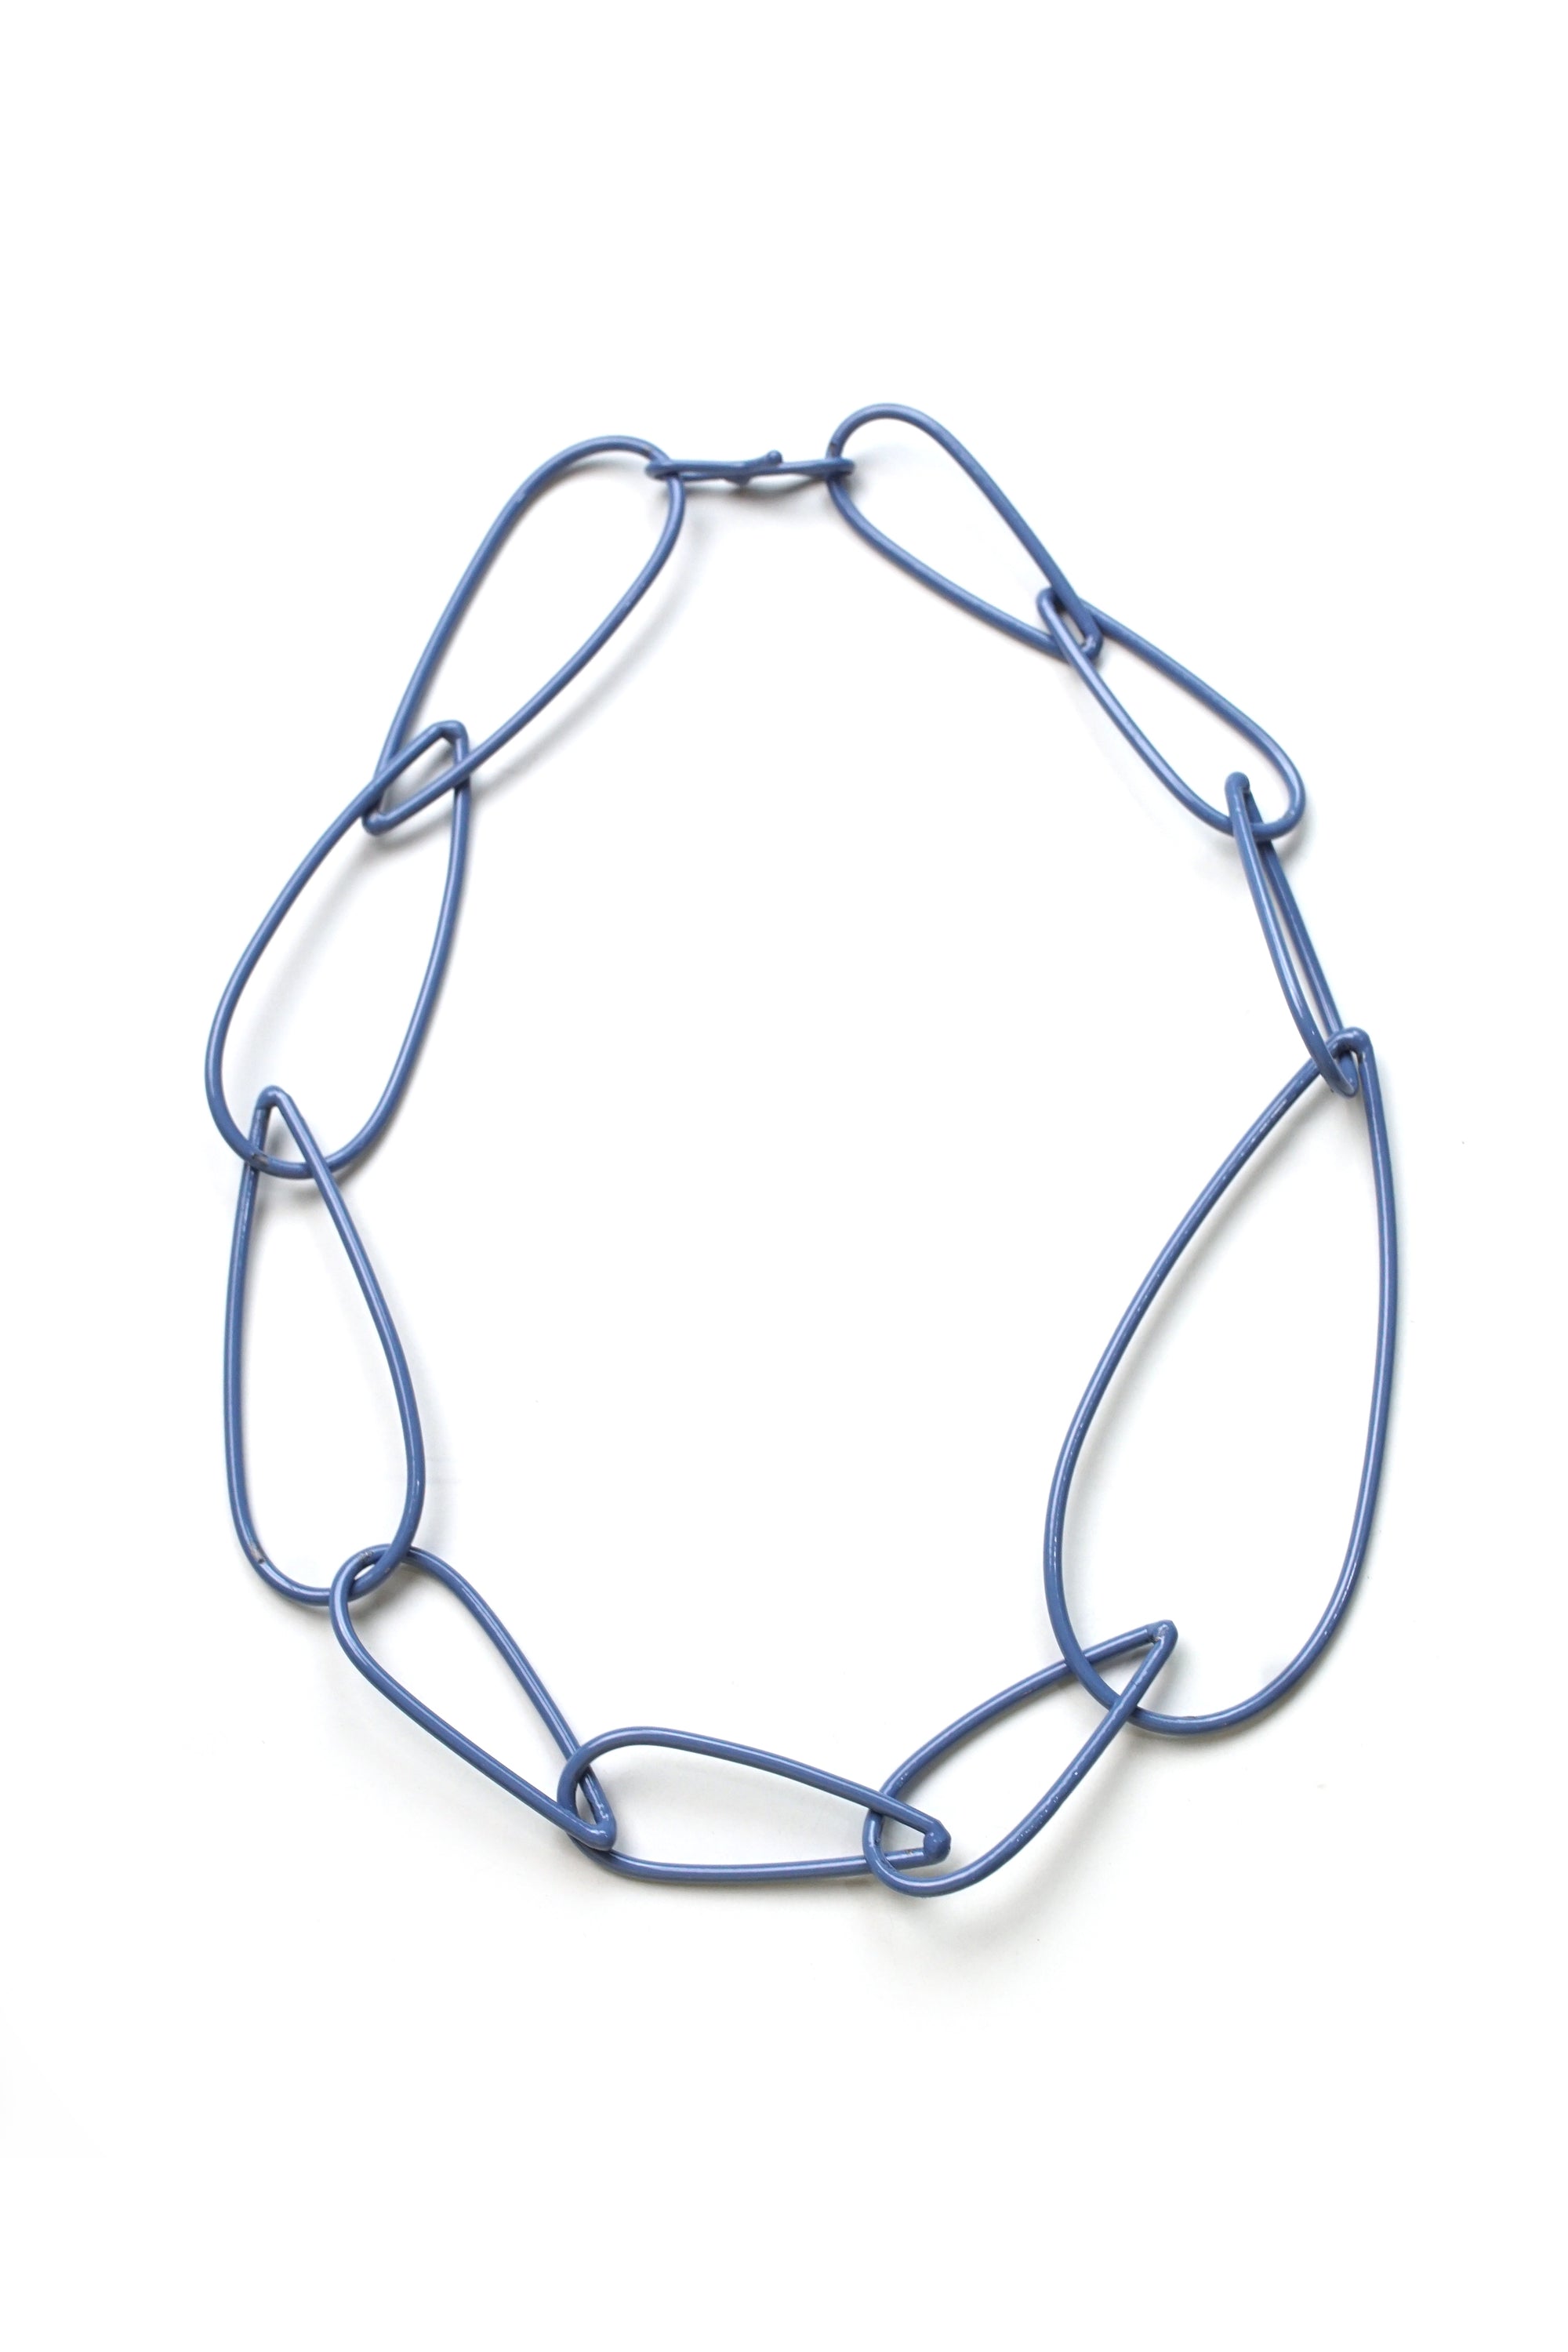 Modular Necklace No. 2 in Color